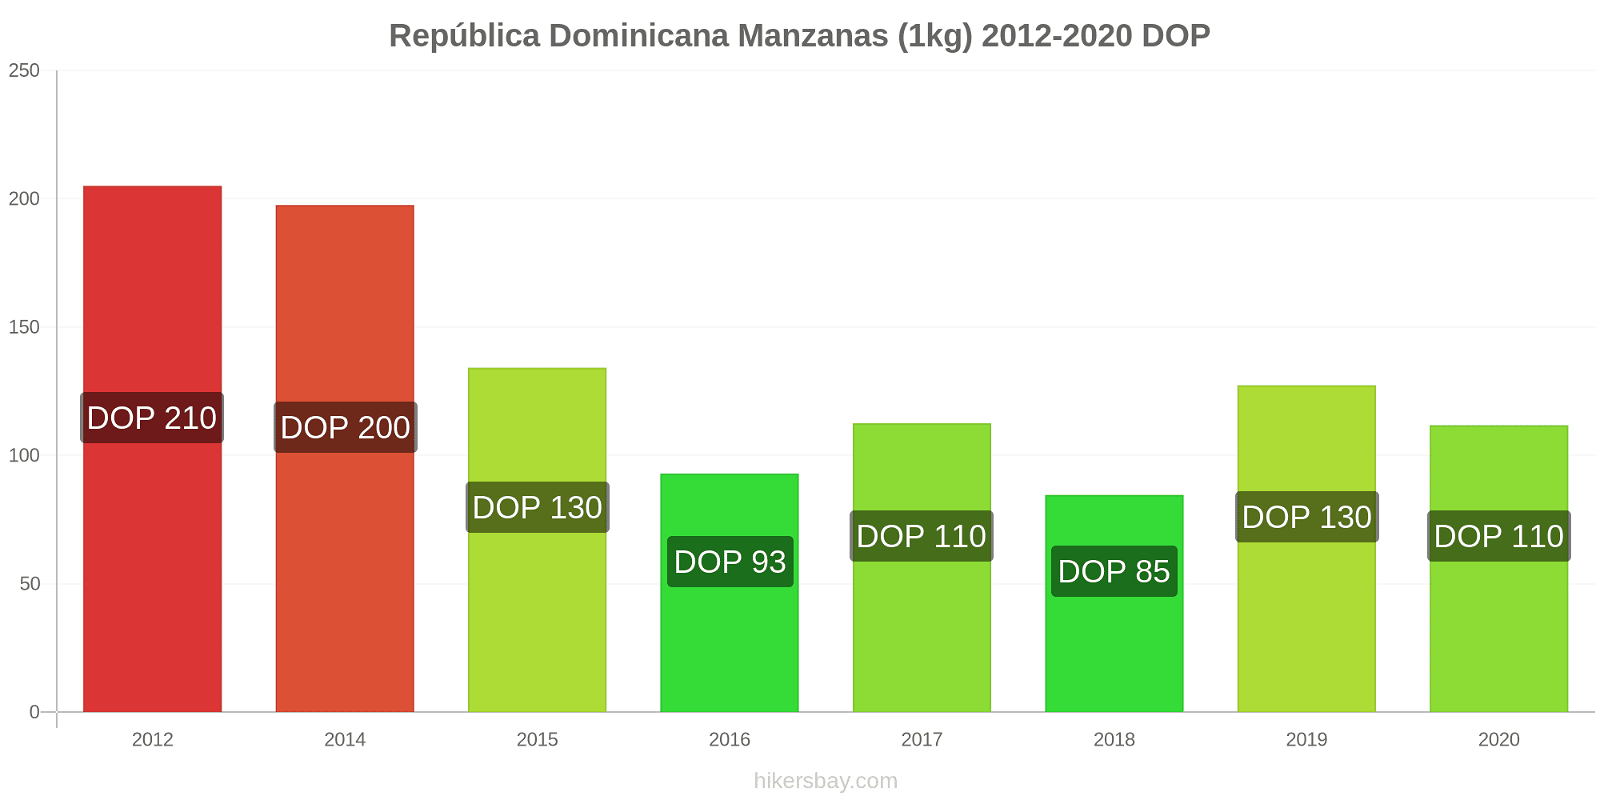 República Dominicana cambios de precios Manzanas (1kg) hikersbay.com